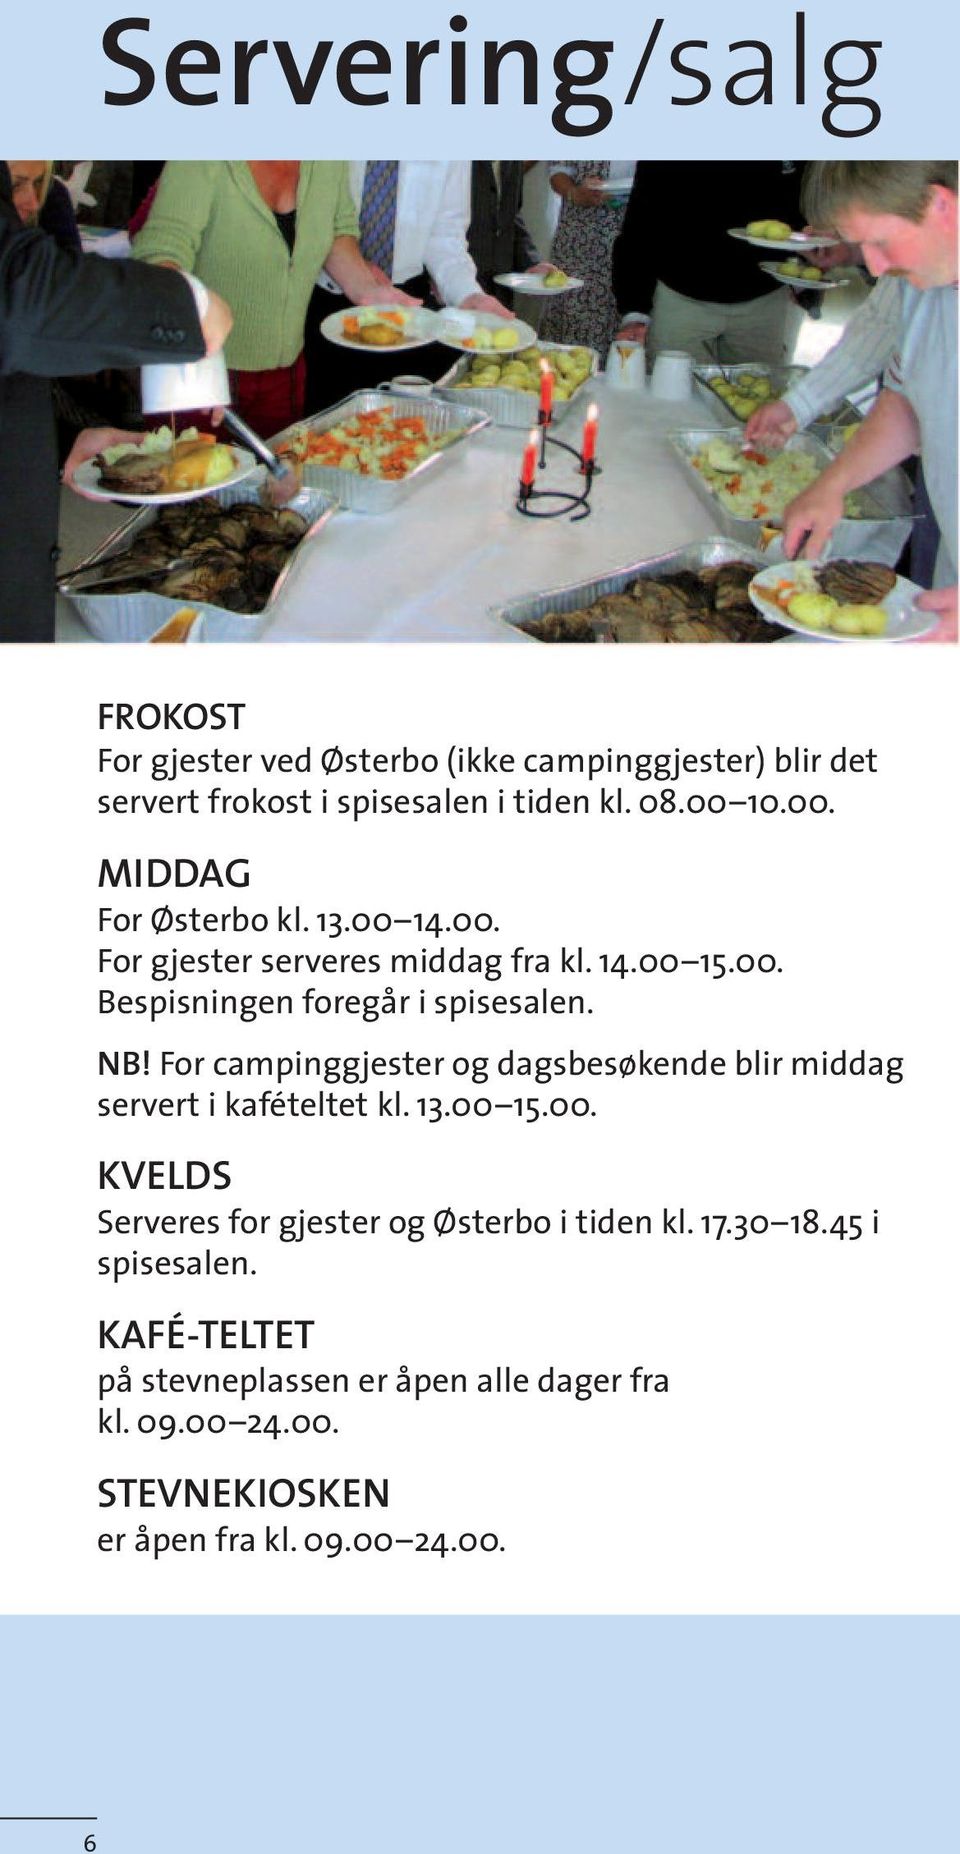 For campinggjester og dagsbesøkende blir middag servert i kafételtet kl. 13.00 15.00. KVELDS Serveres for gjester og Østerbo i tiden kl.